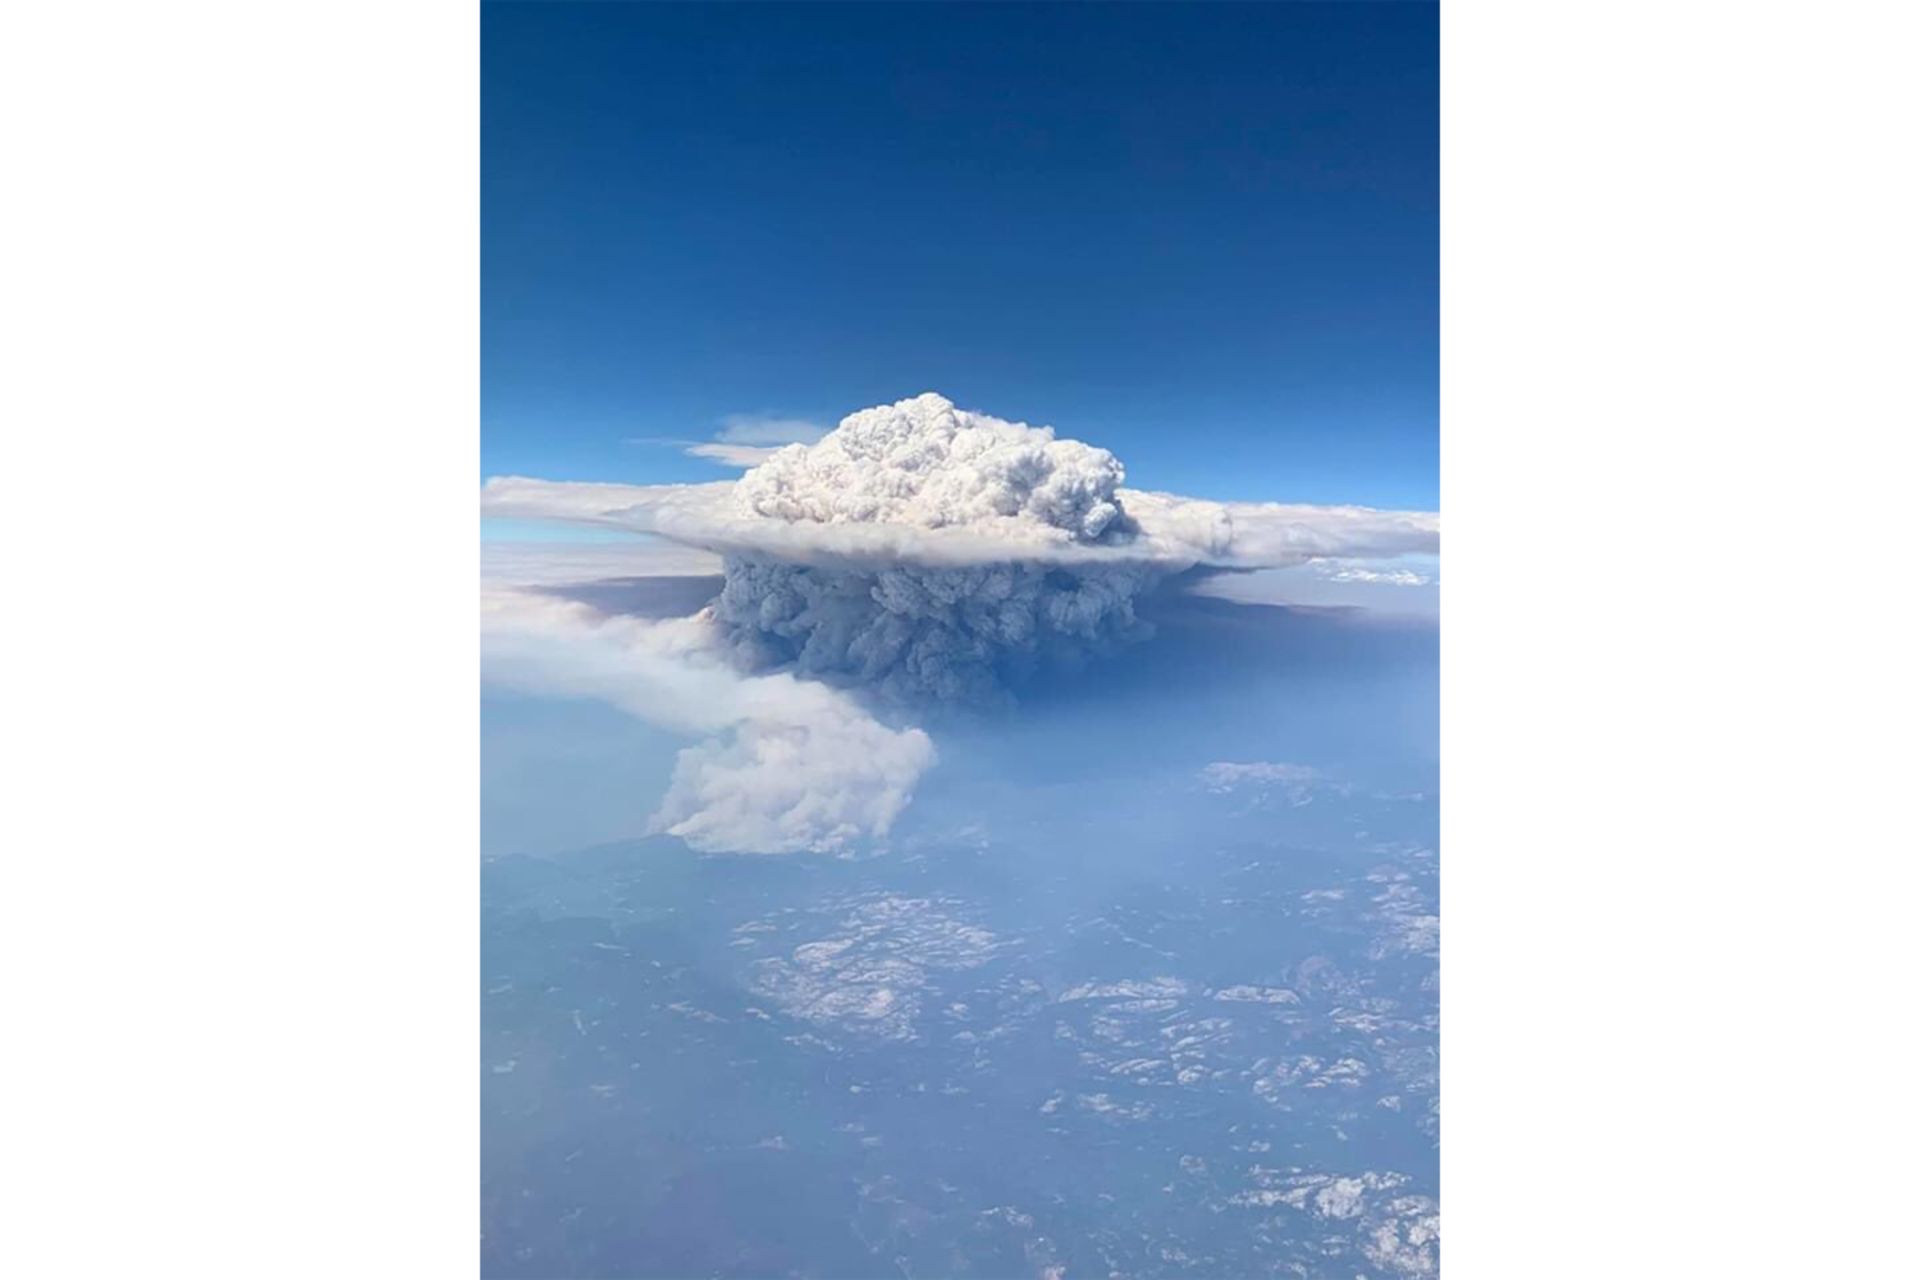 ابرهای پیروکومولونیمبوس در پی گرمای شدید آتش سوزی کالیفرنیا 2020